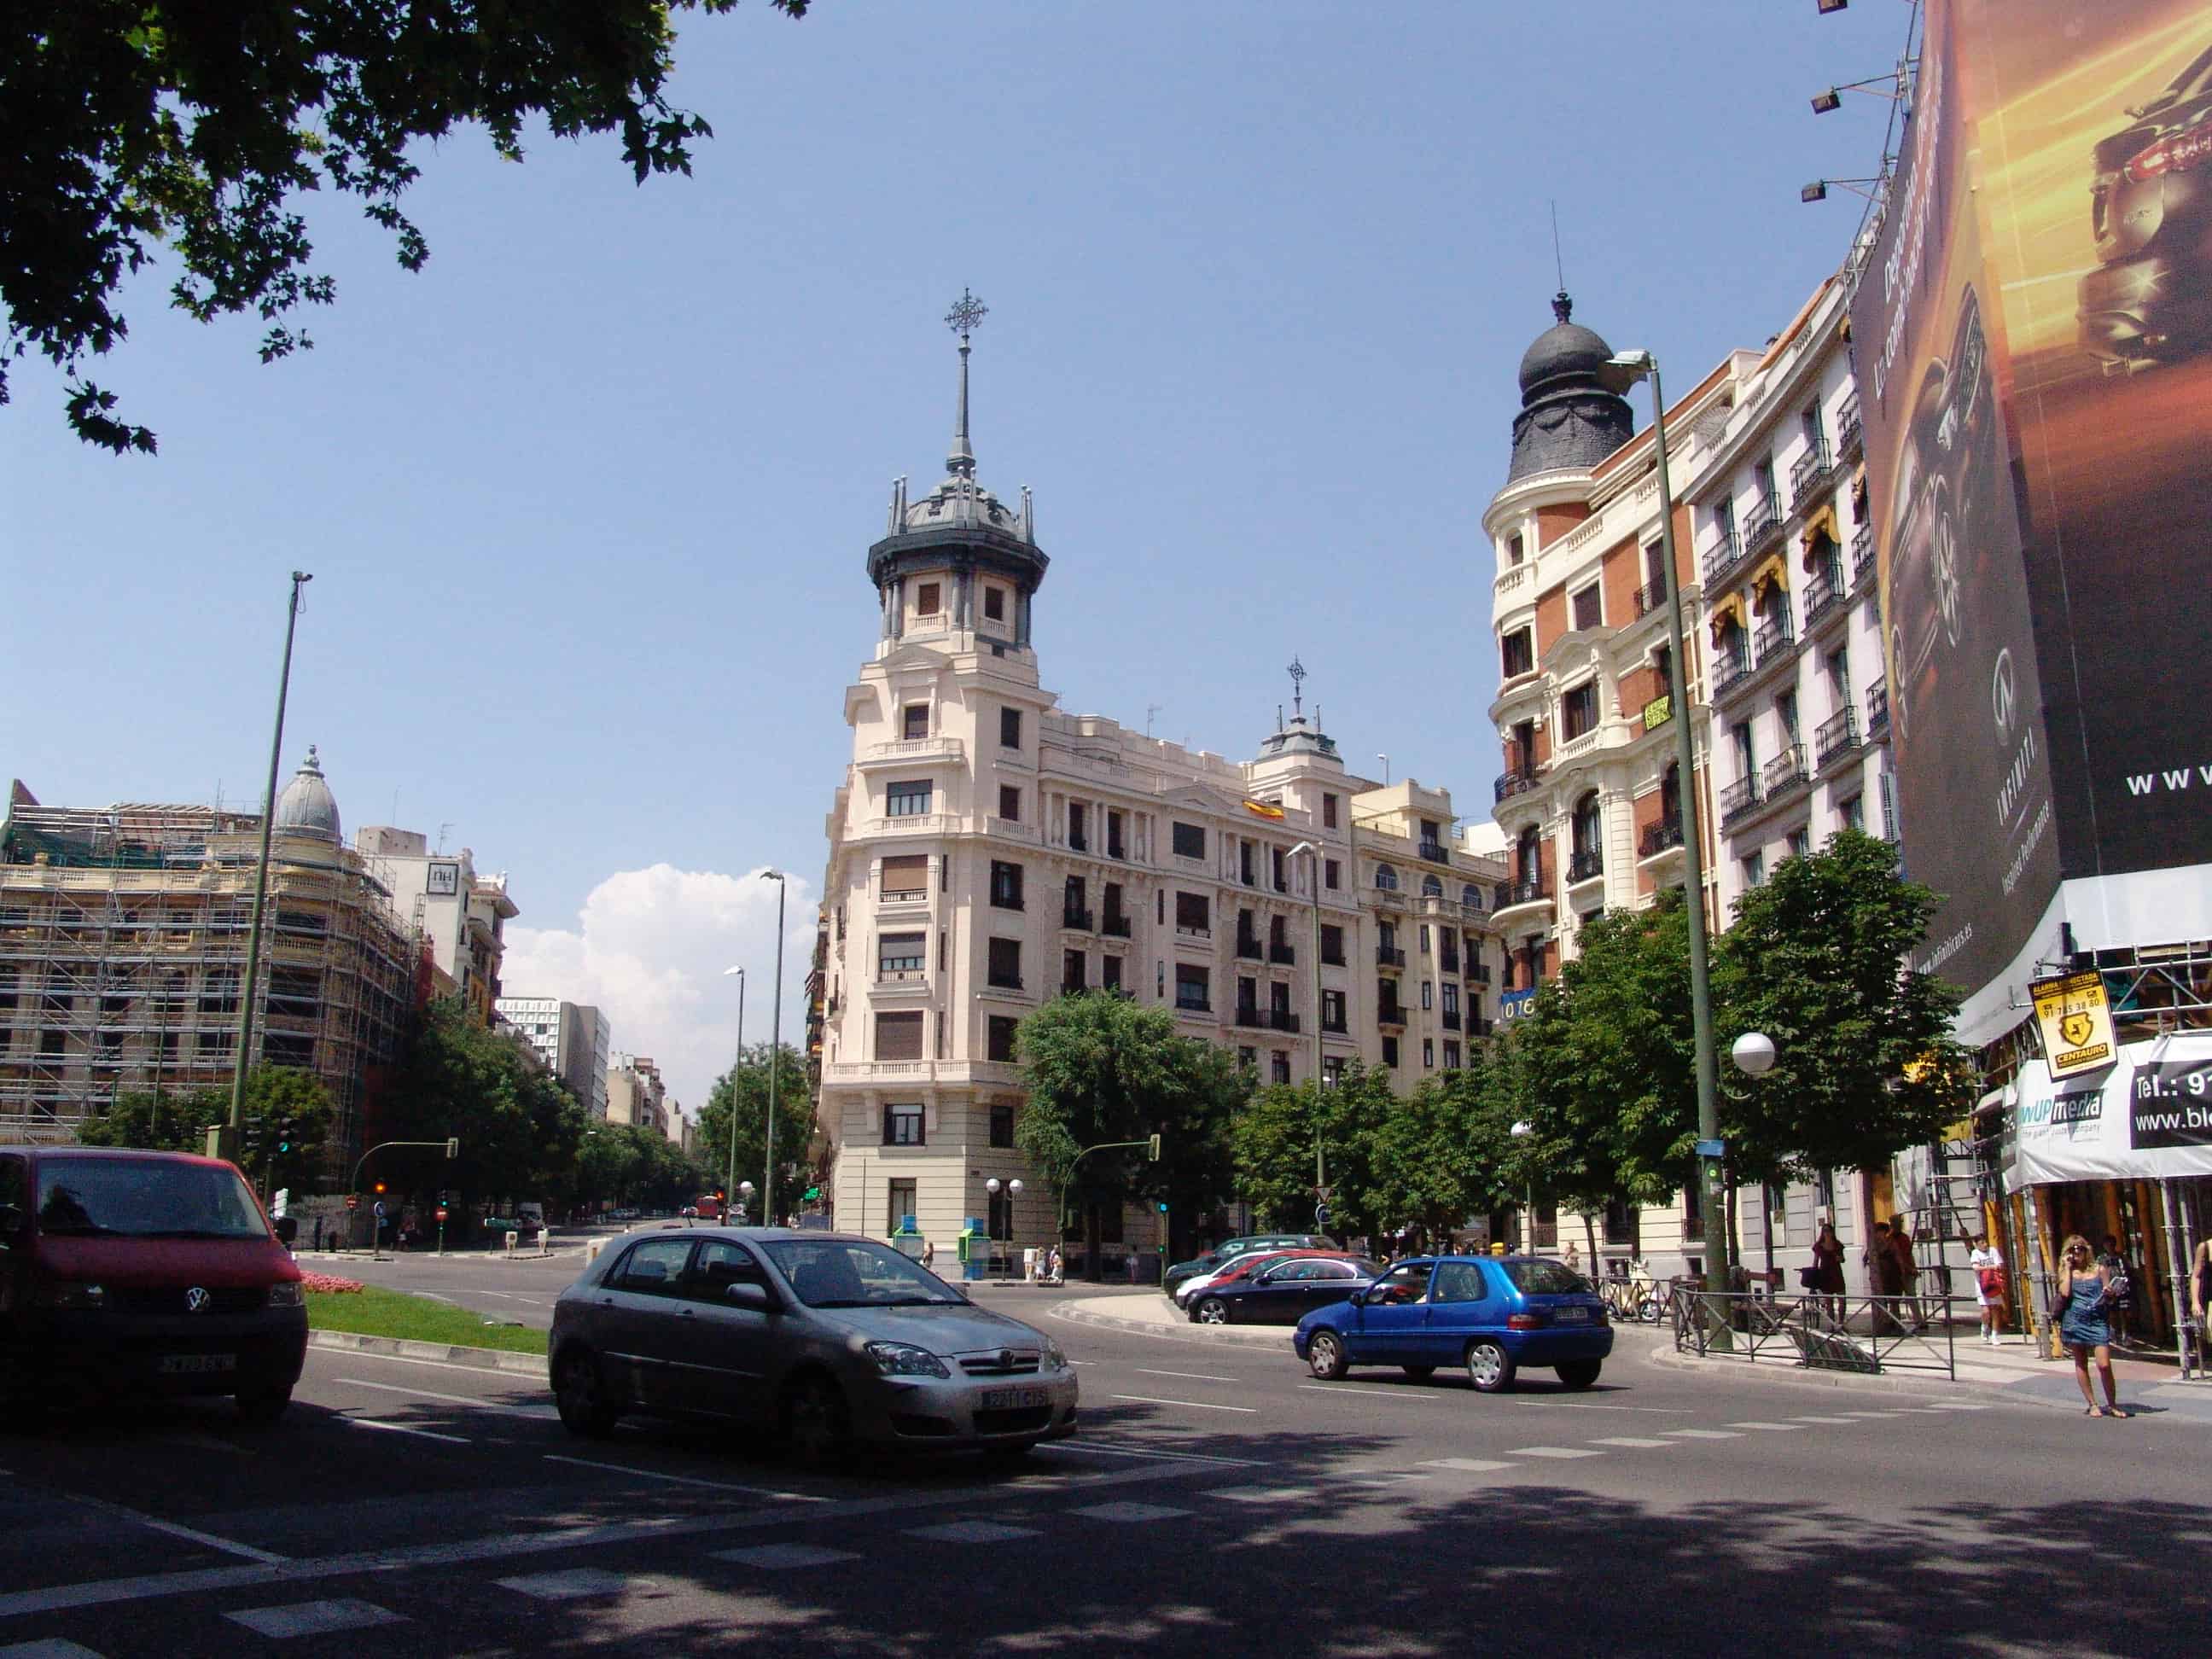 Plaza de Alonso Martínez in Madrid, Spain